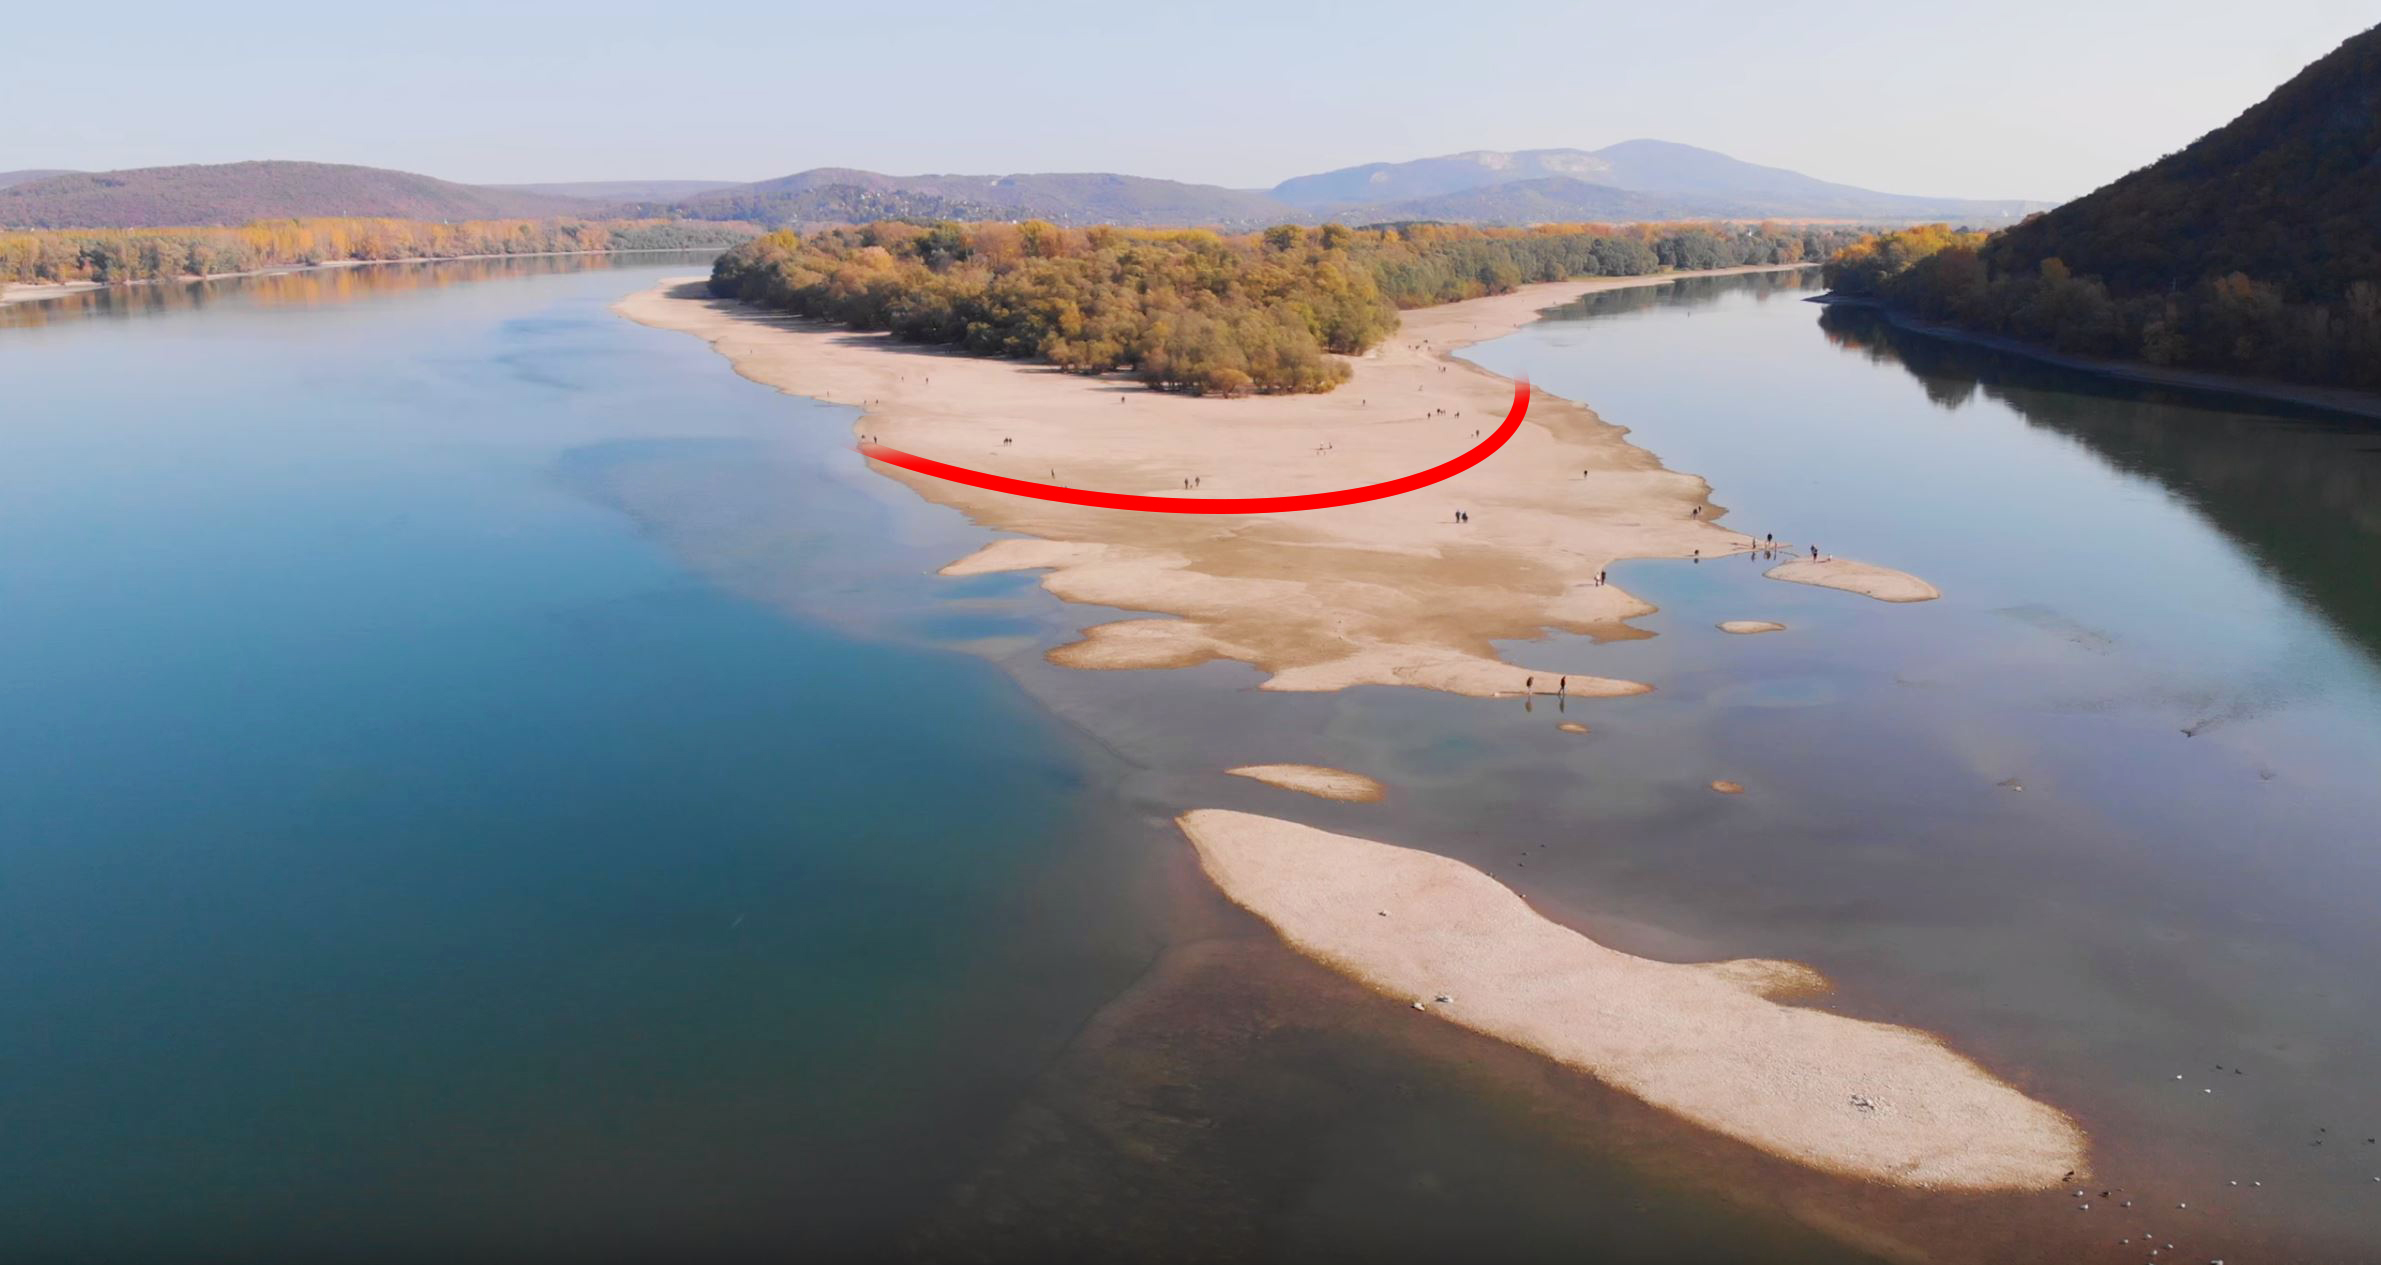 Rekordalacsony vízállás a Dunán 2018 októberében, Kisoroszi Szigetcsúcson